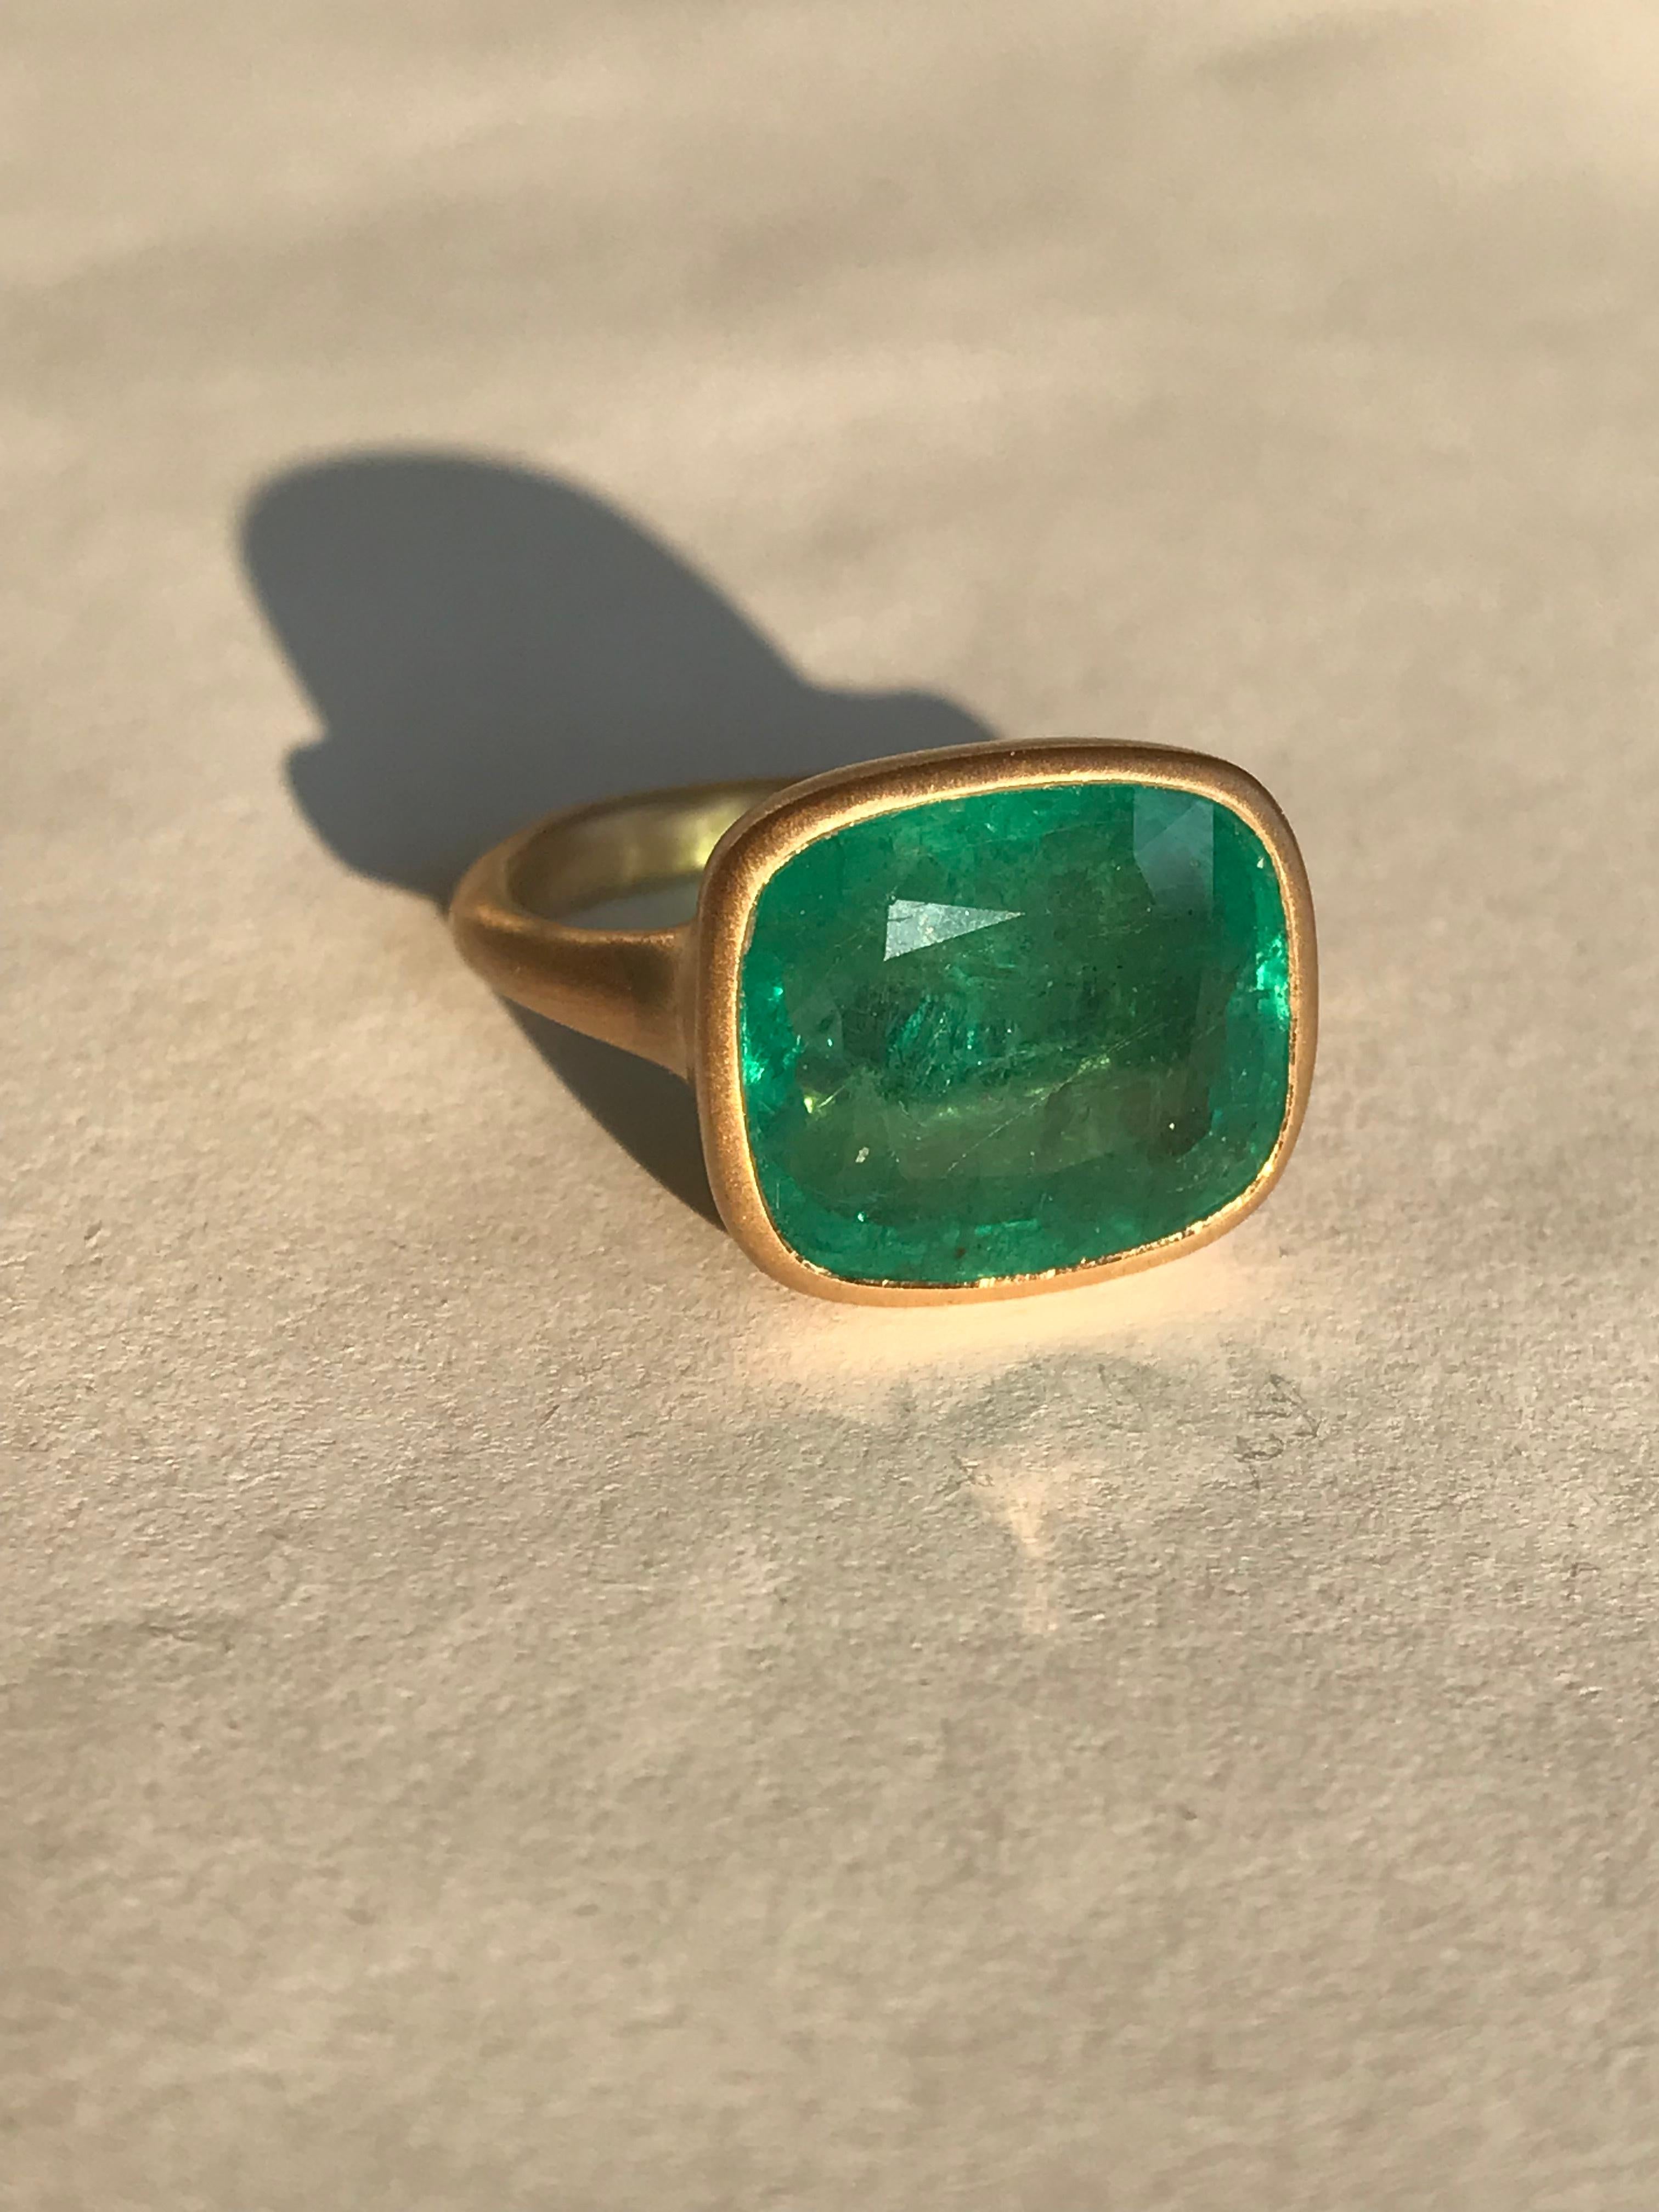 Dalben 9, 7 Carat Emerald Yellow Gold Ring 5